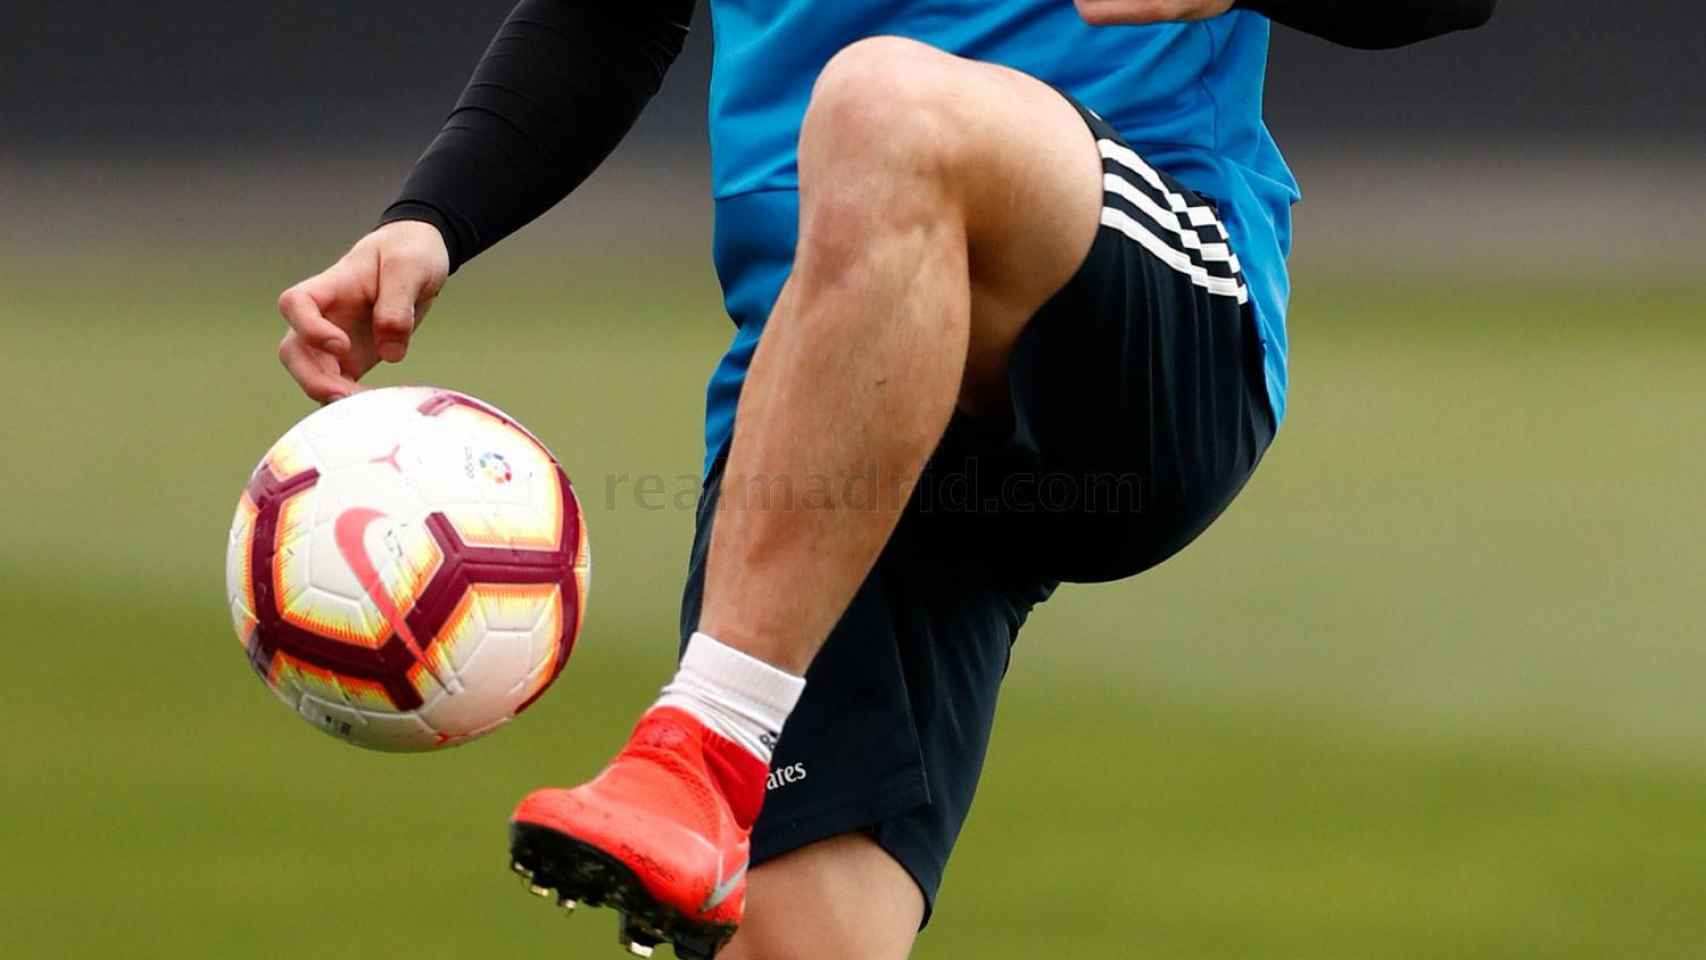 Carvajal se entrena con el Real Madrid